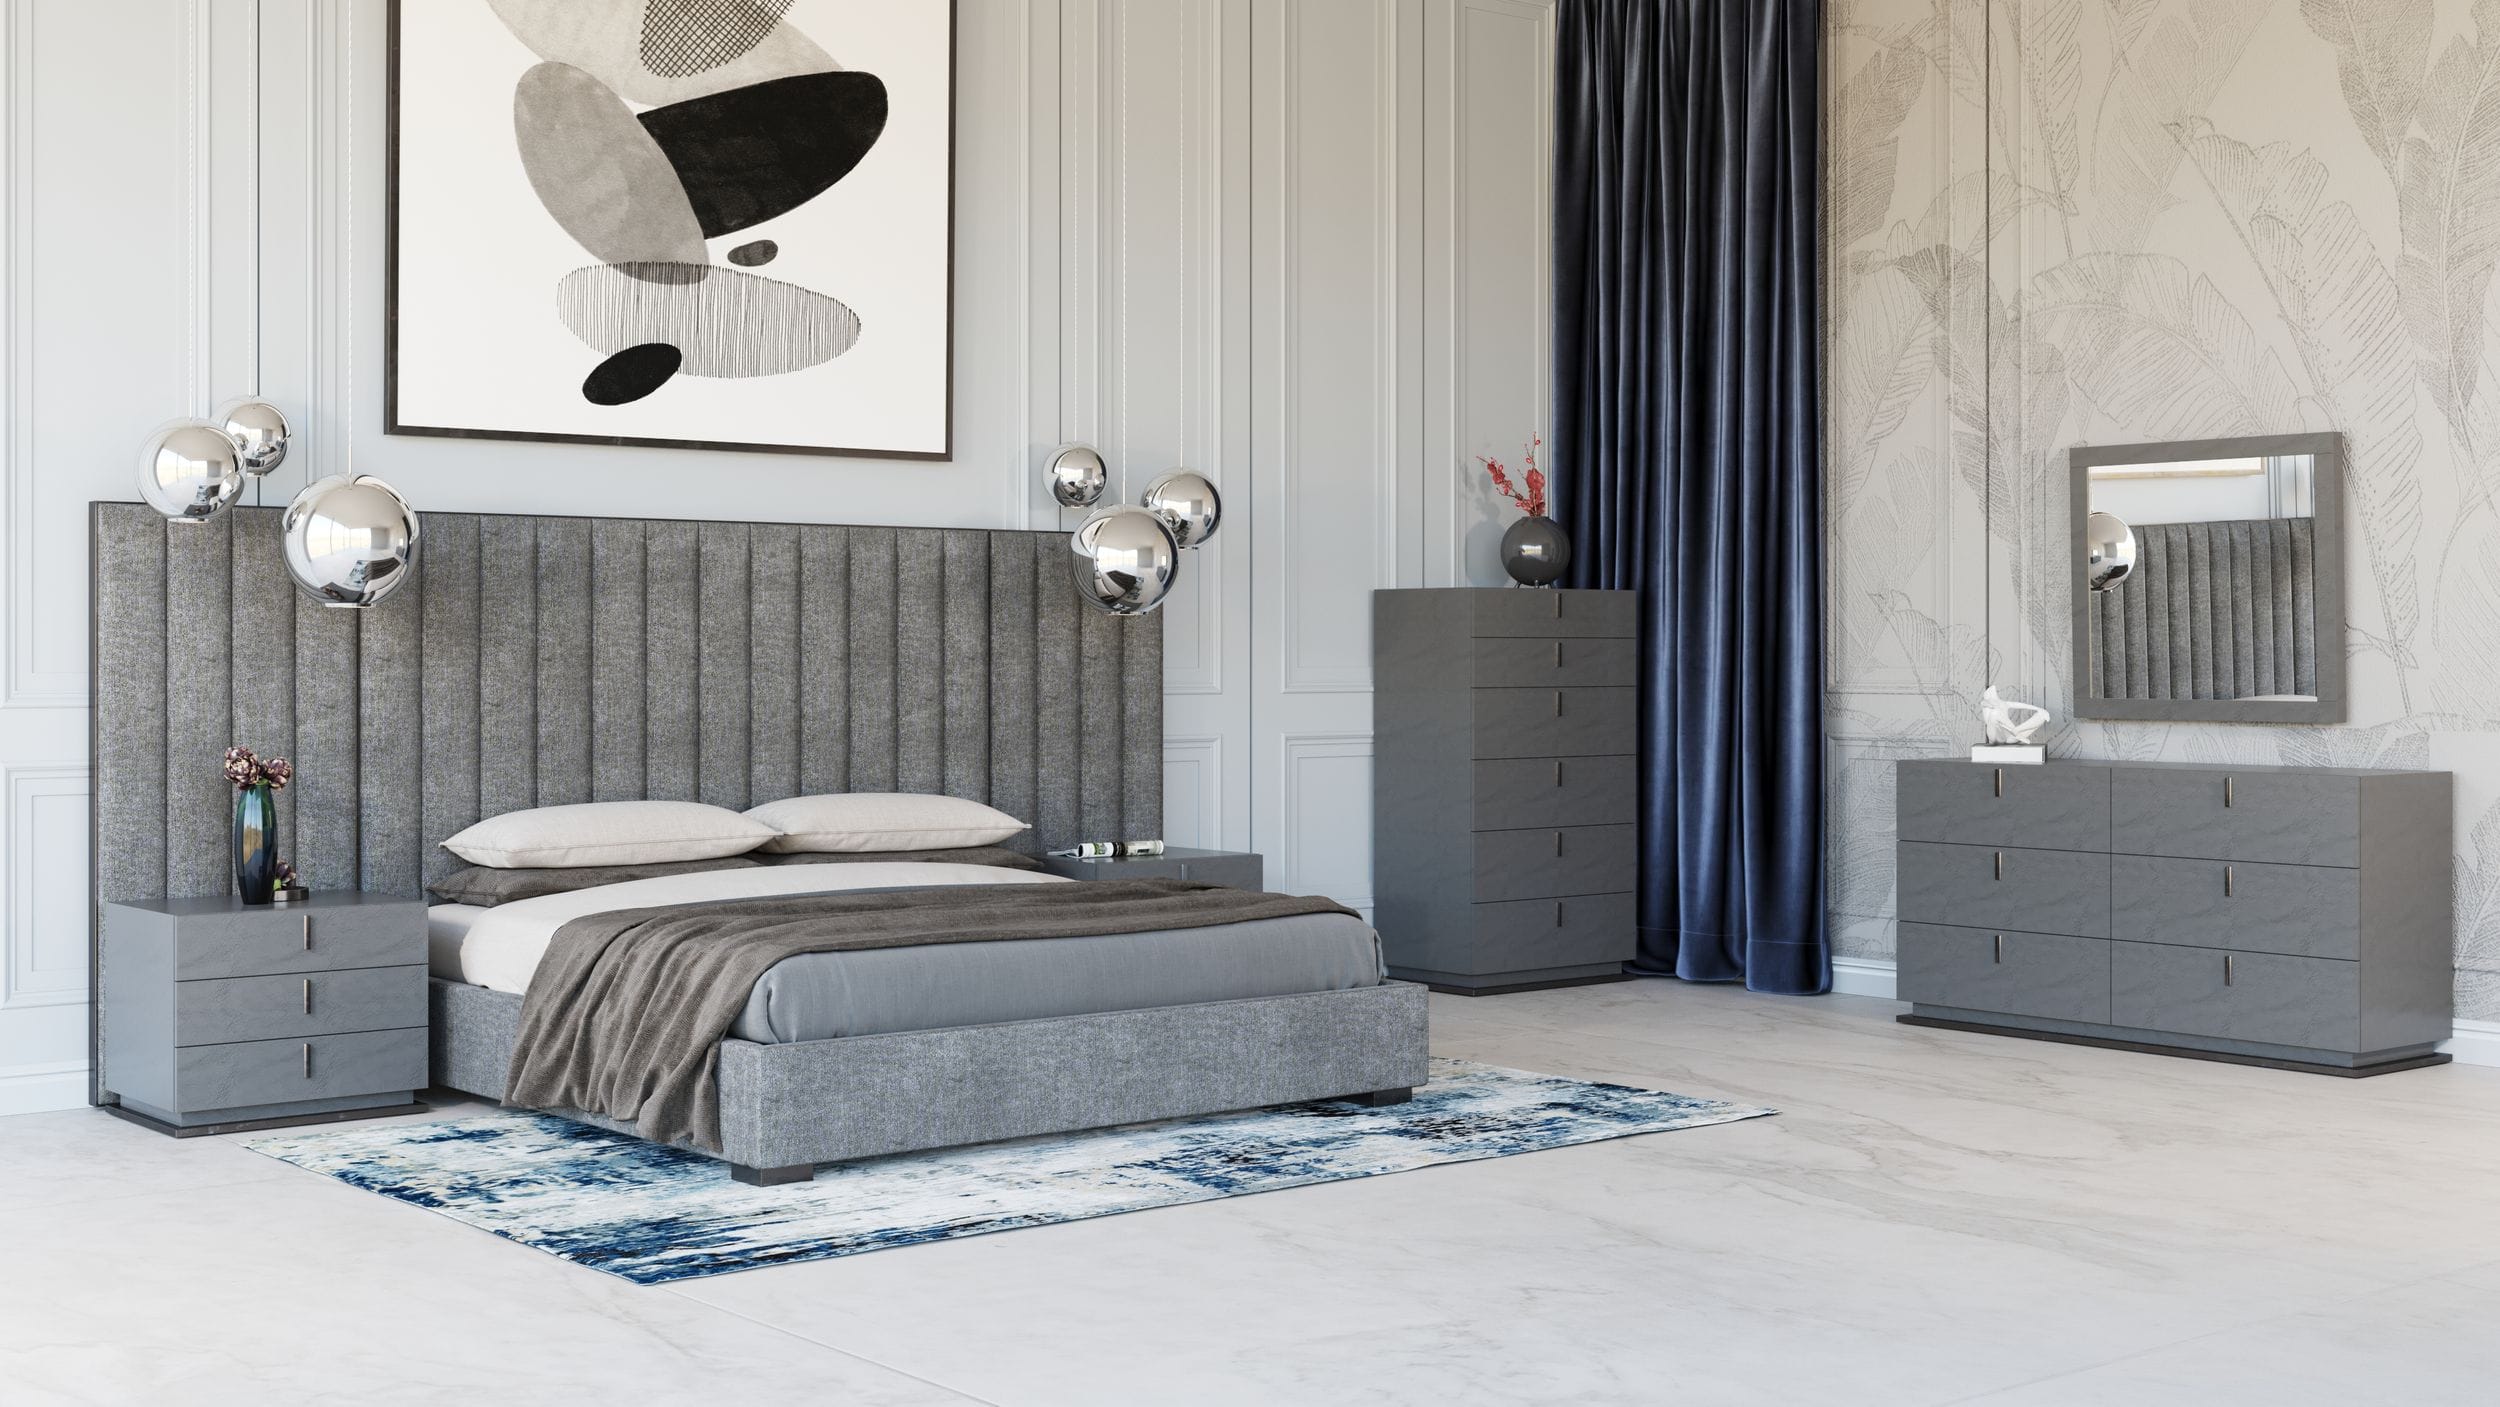 Modrest Buckley - Grey & Black Stainless Steel Bedroom Set-Bedroom Set-VIG-Wall2Wall Furnishings